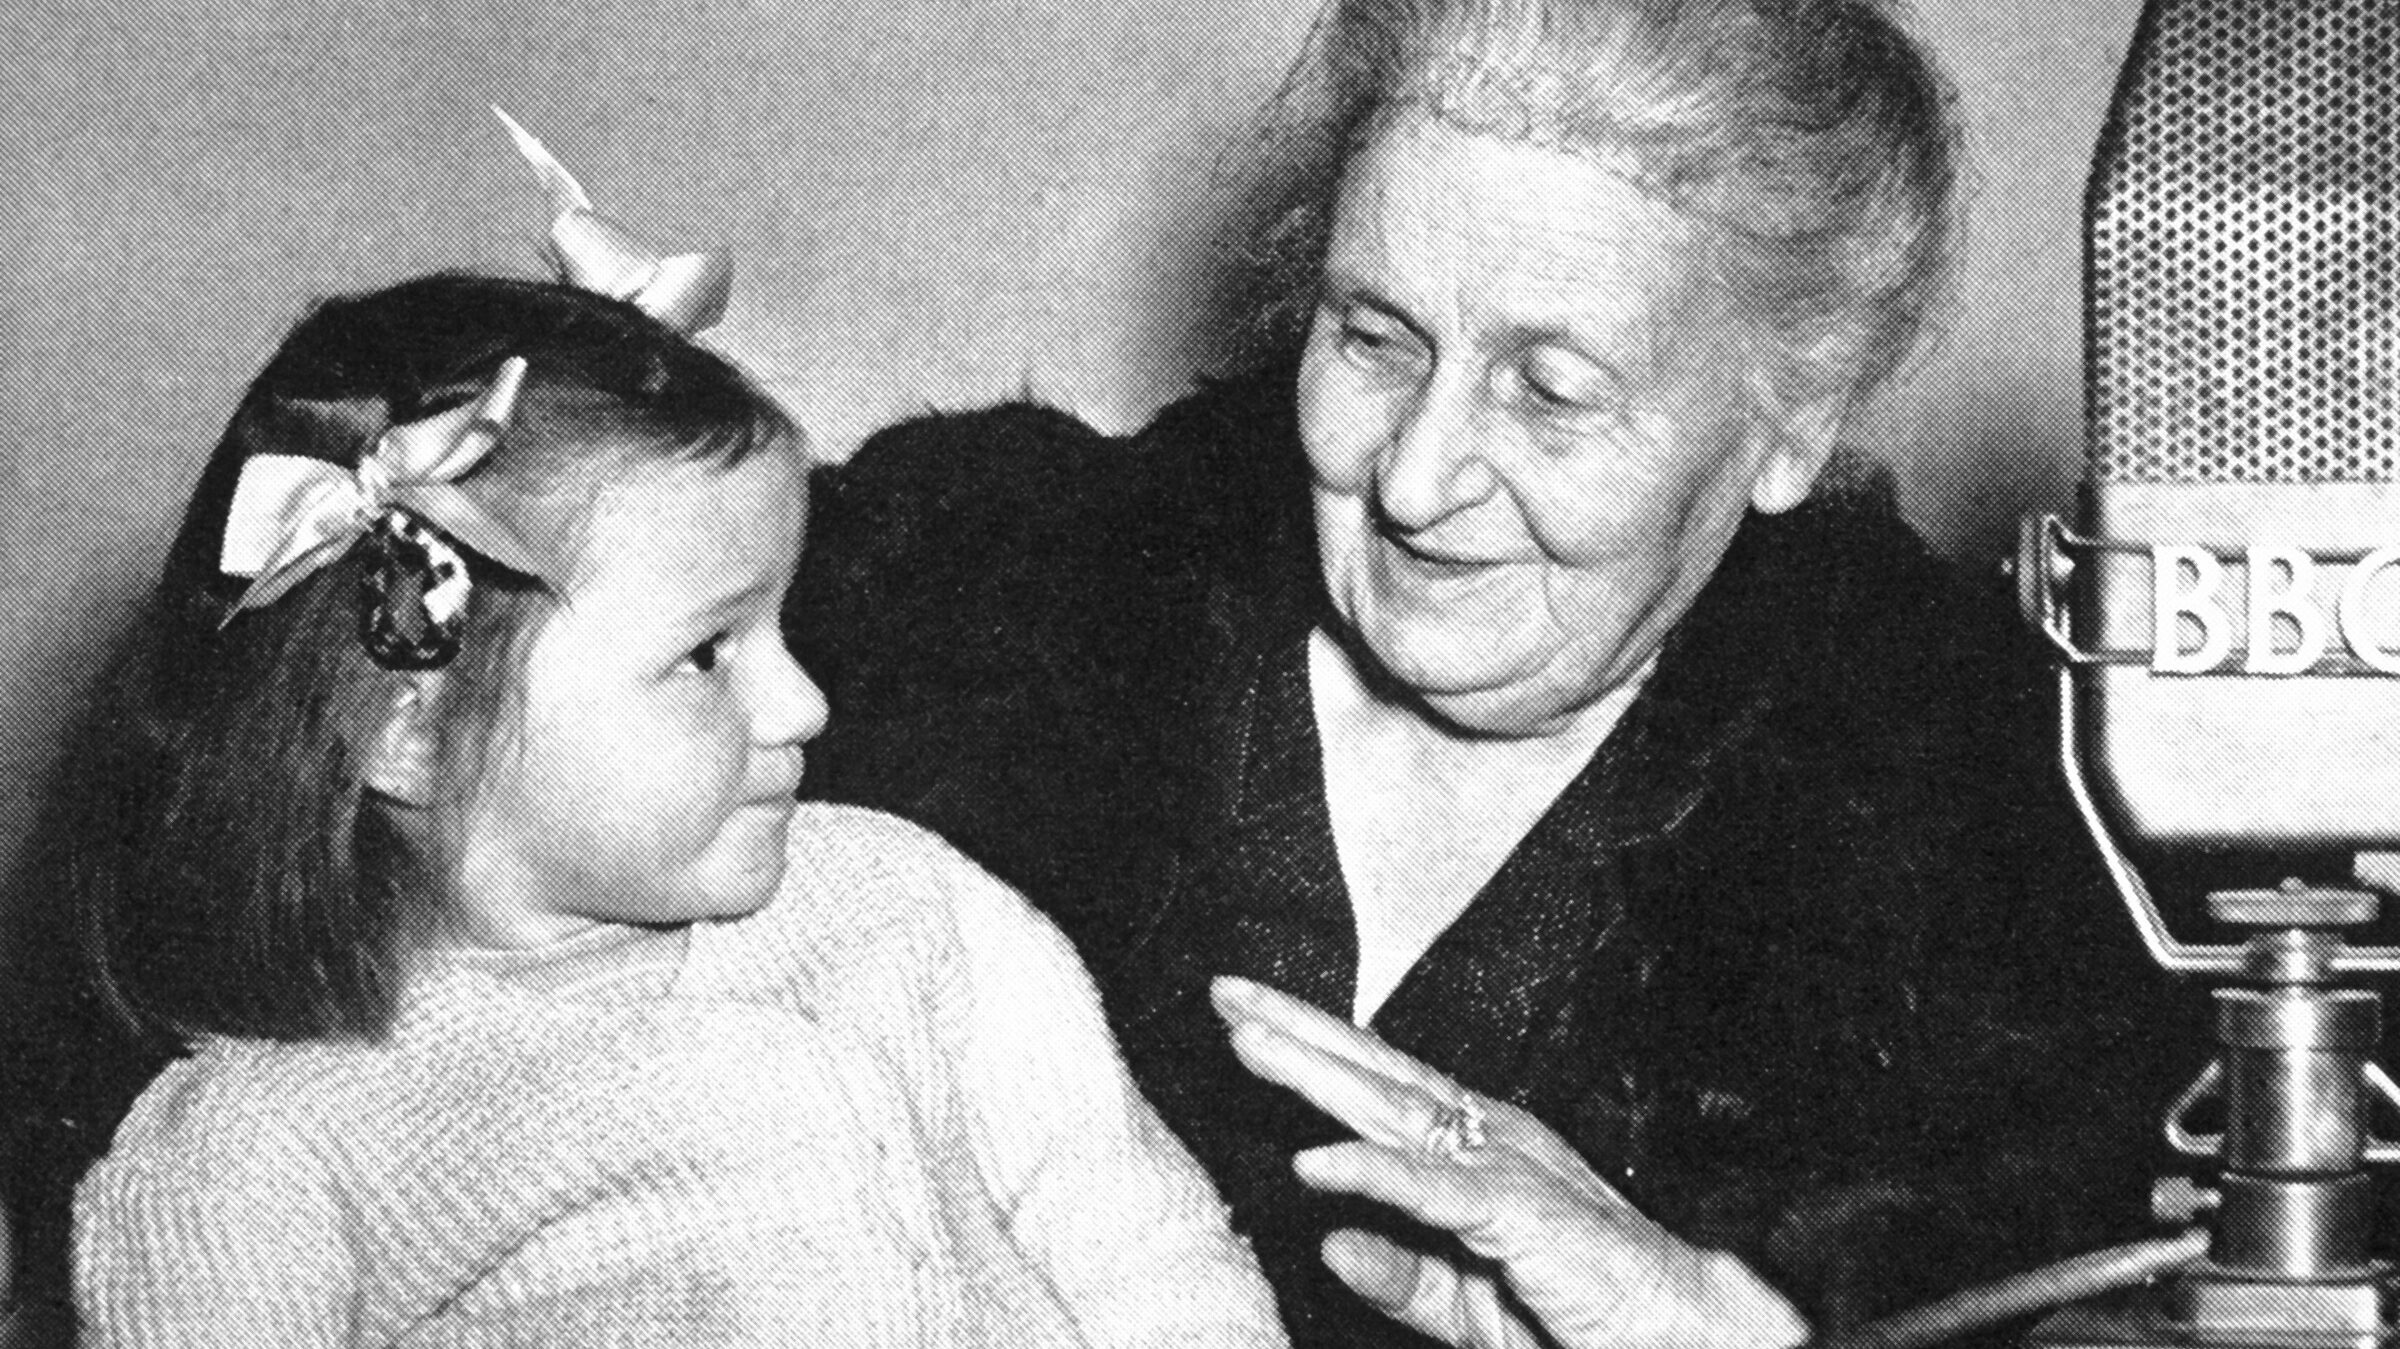 Dr. Maria Montessori - the founder of Montessori education